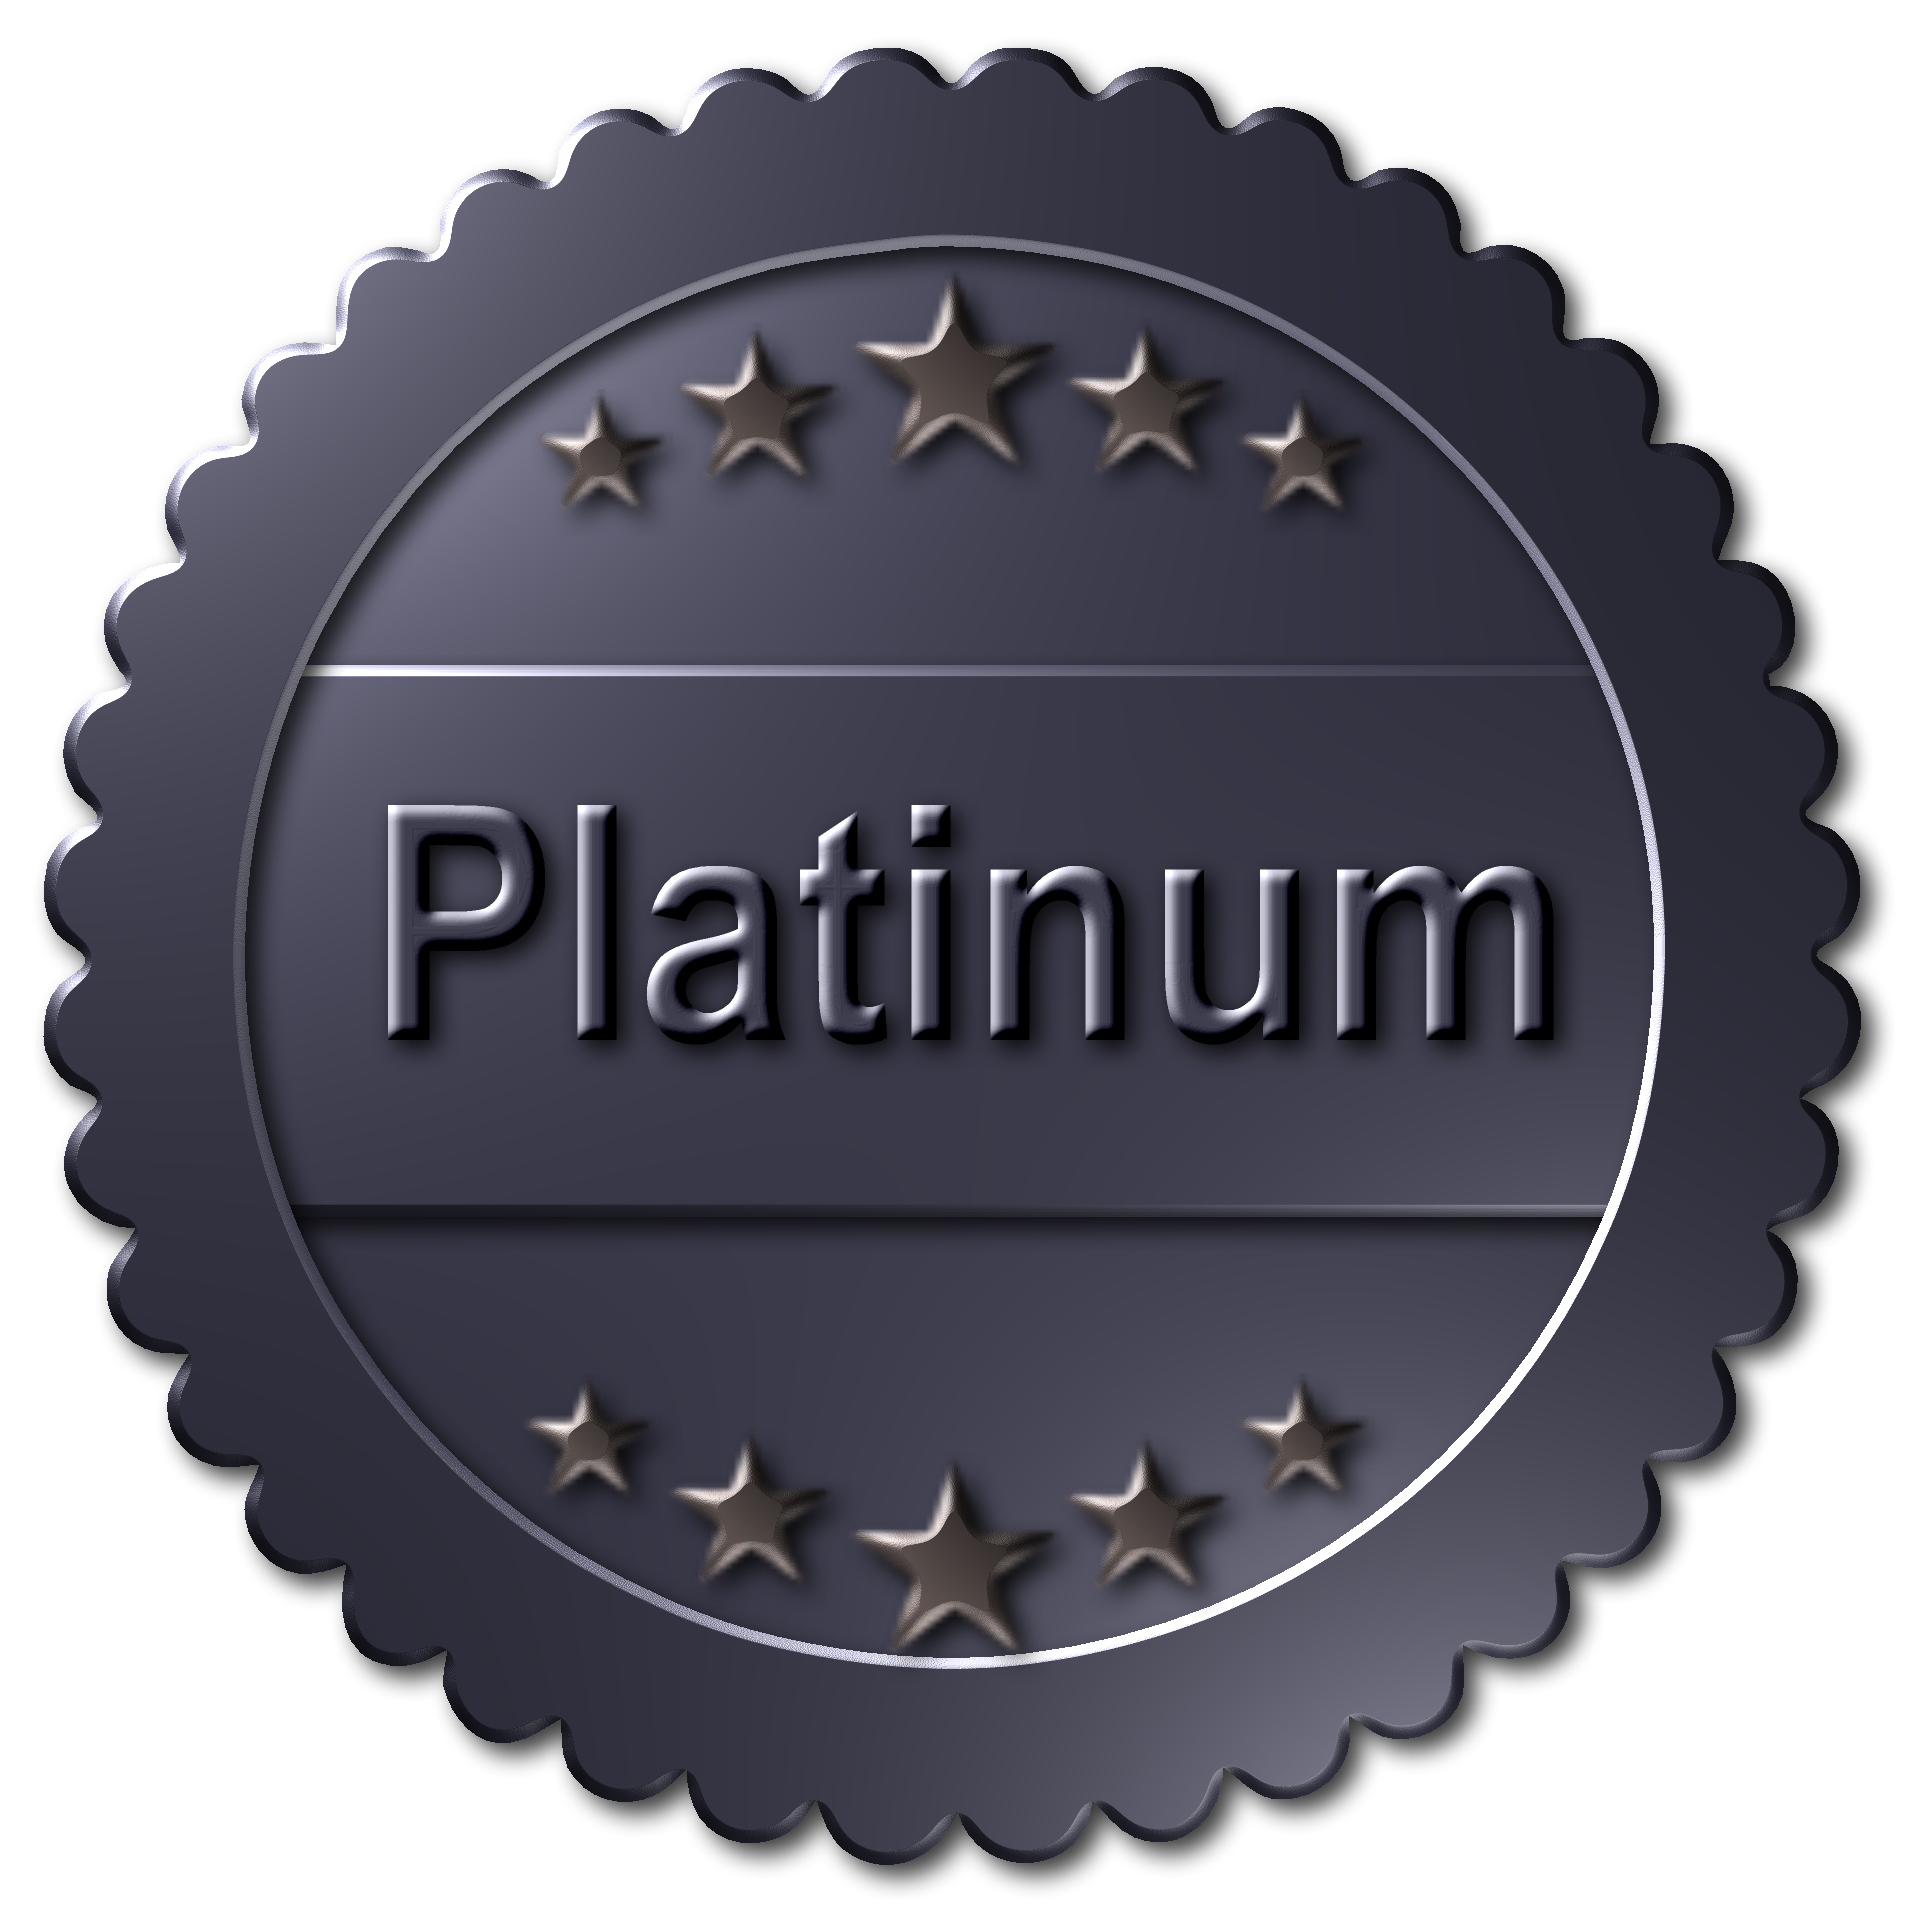 platinum membership